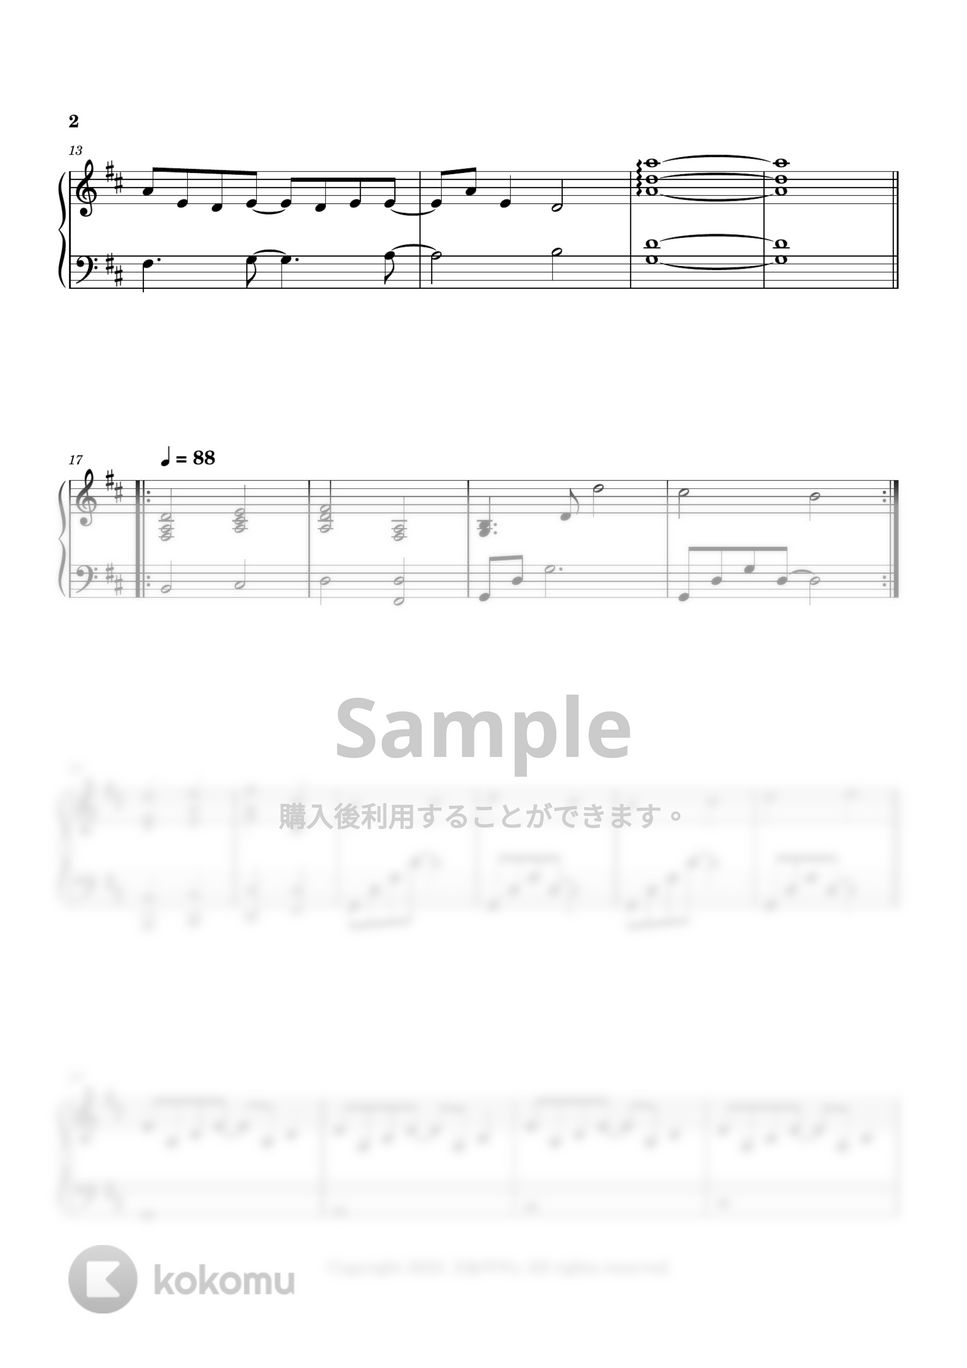 Seiji Kameda - 忘れたくない (今夜、世界からこの恋が消えても track 20) by 今日ピアノ(Oneul Piano)